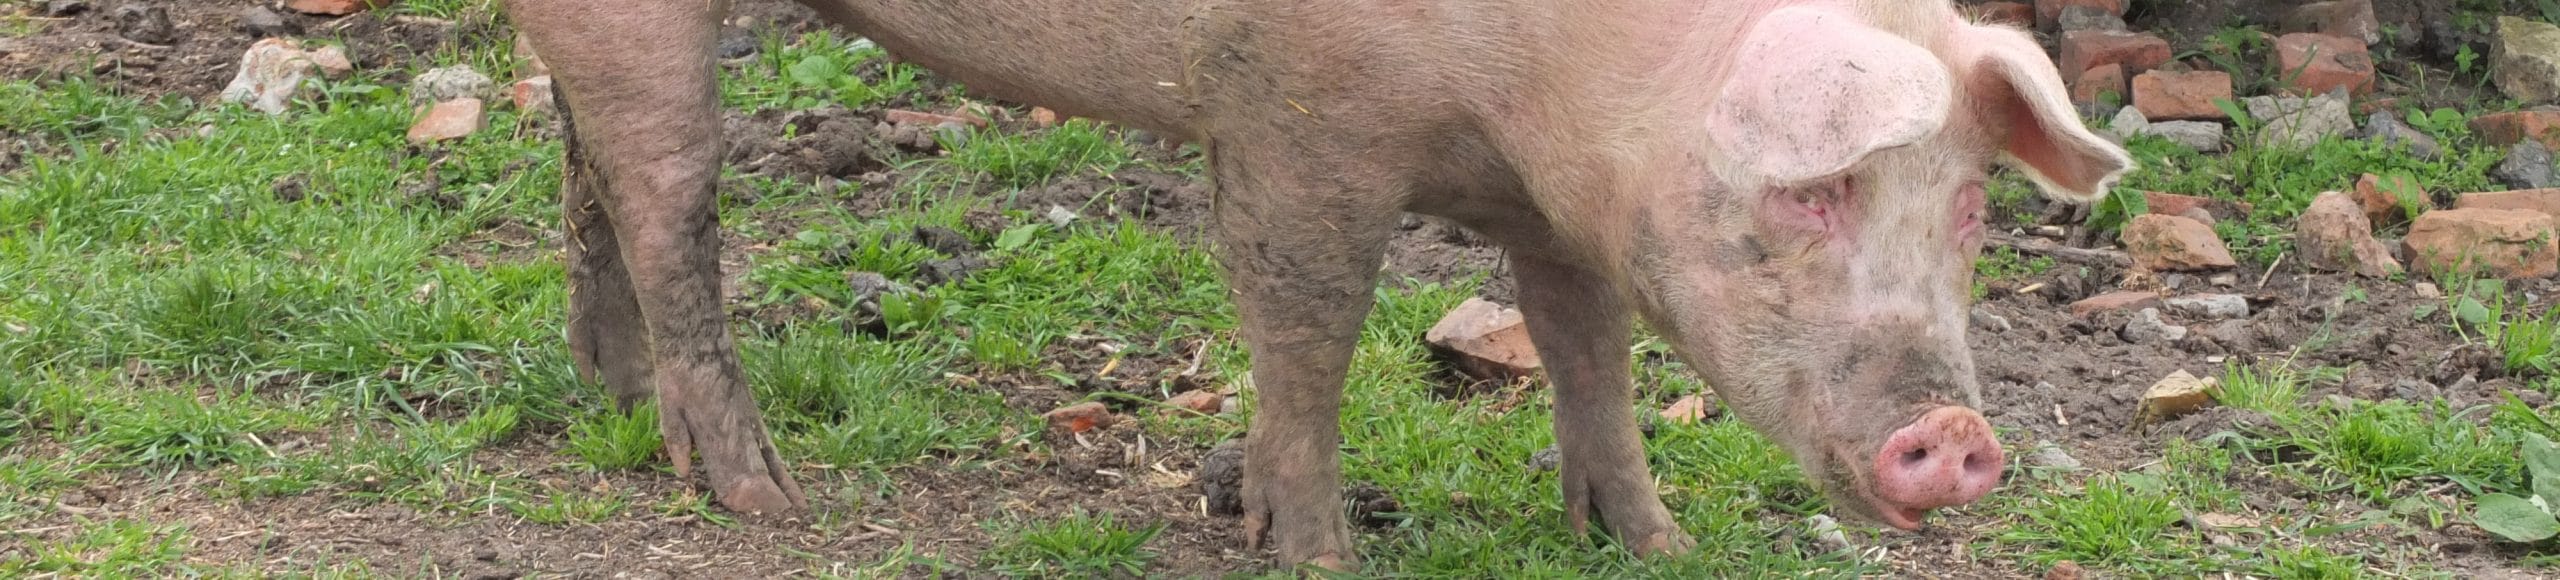 Landwirtschaft Tiertransporte Schwein